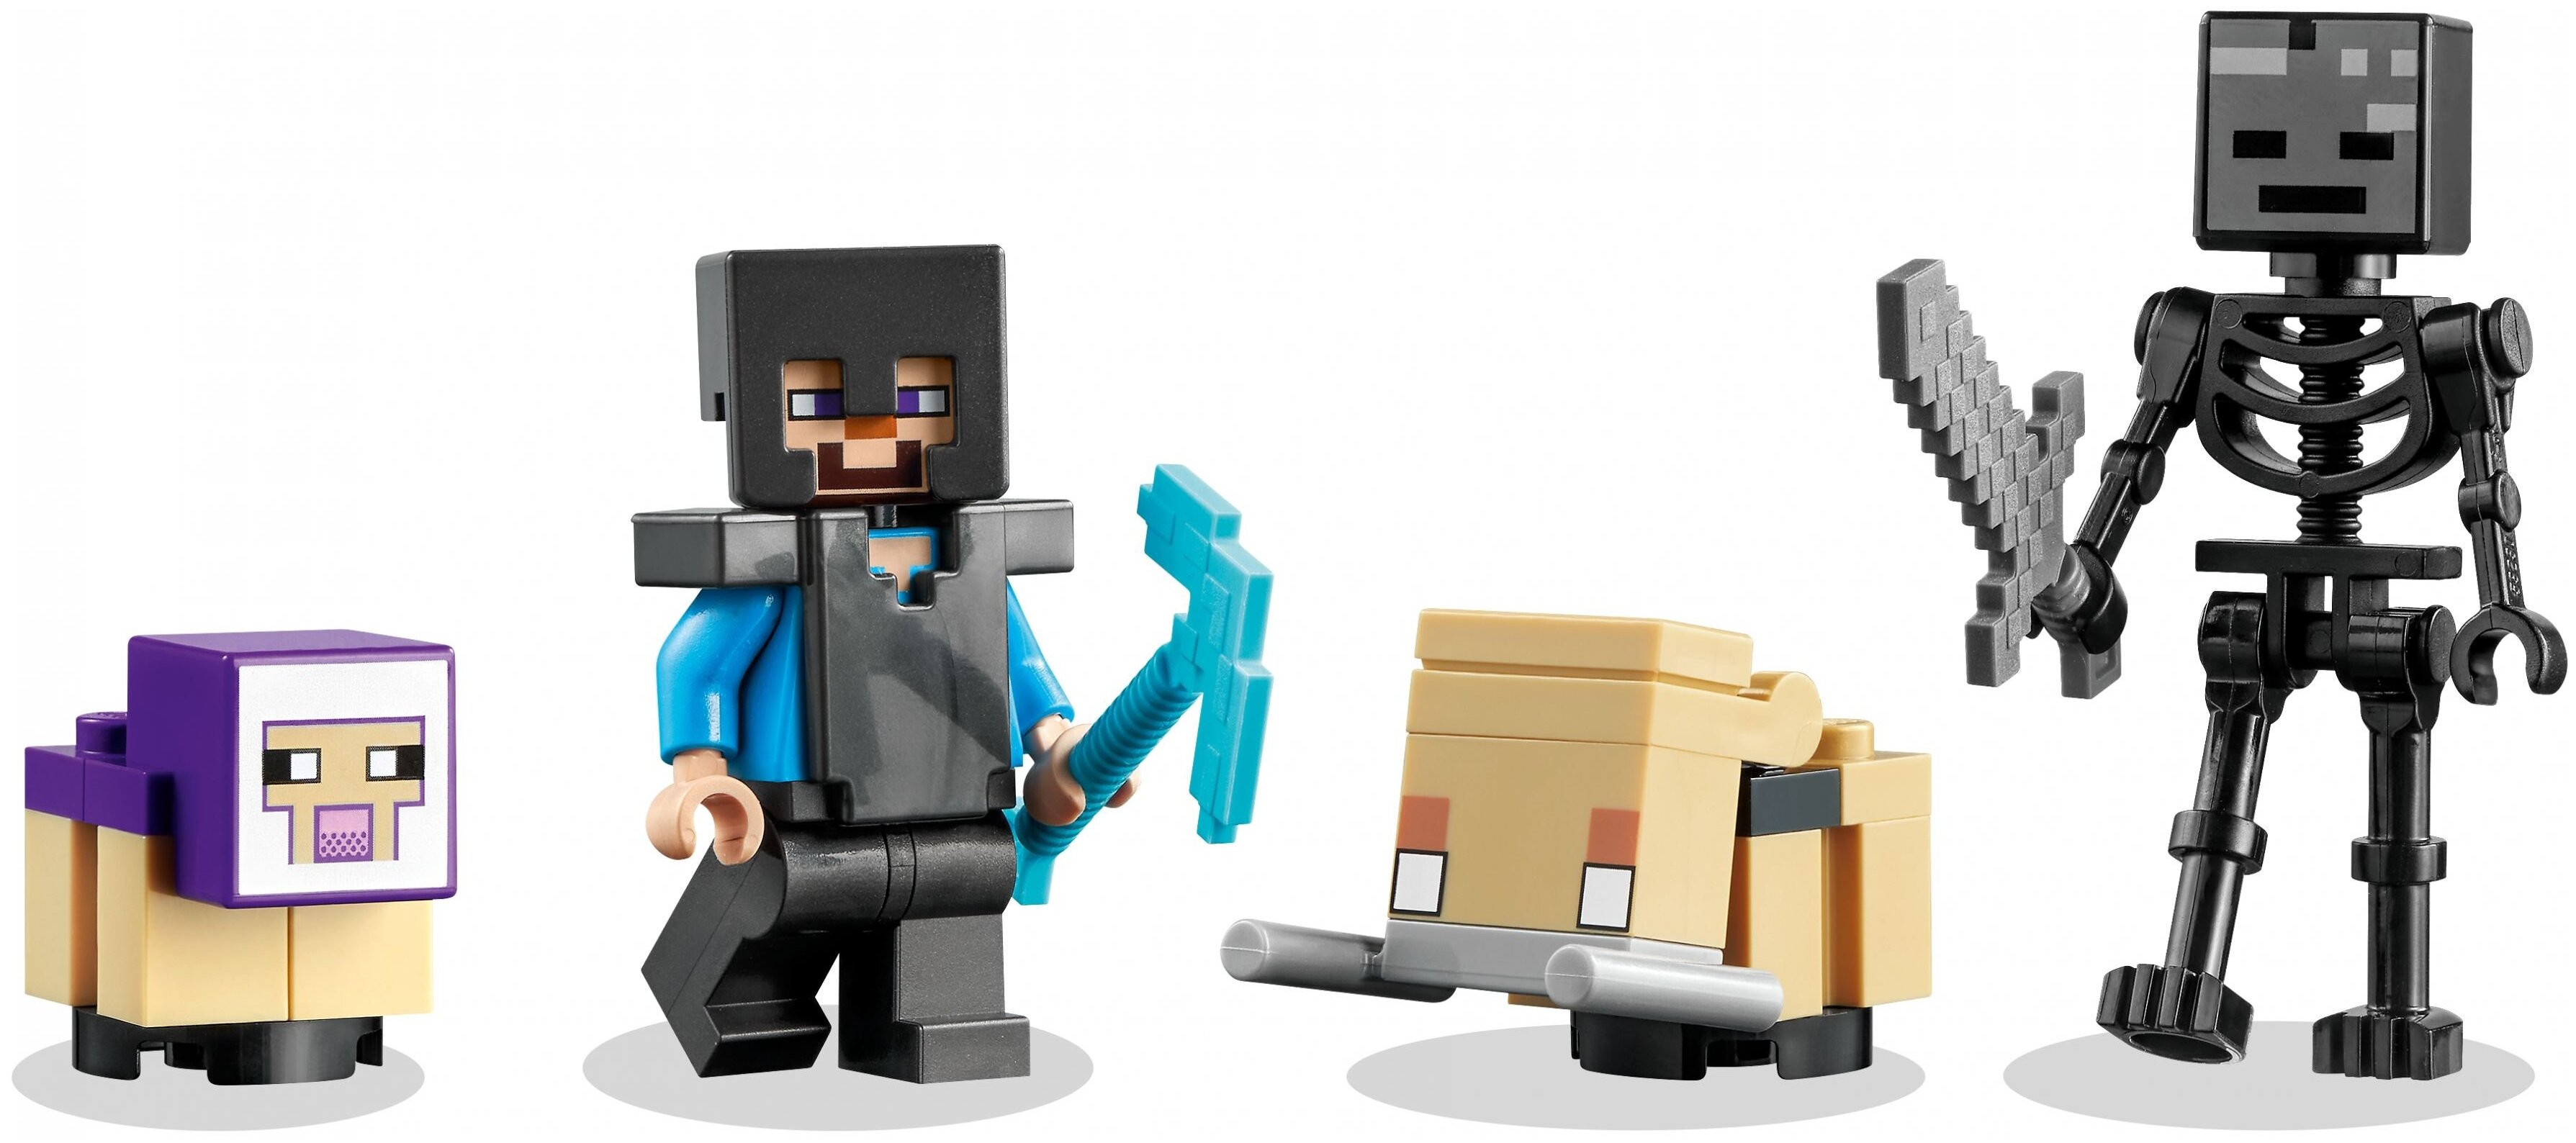 Конструктор LEGO 21172 Minecraft Разрушенный портал Казахстан